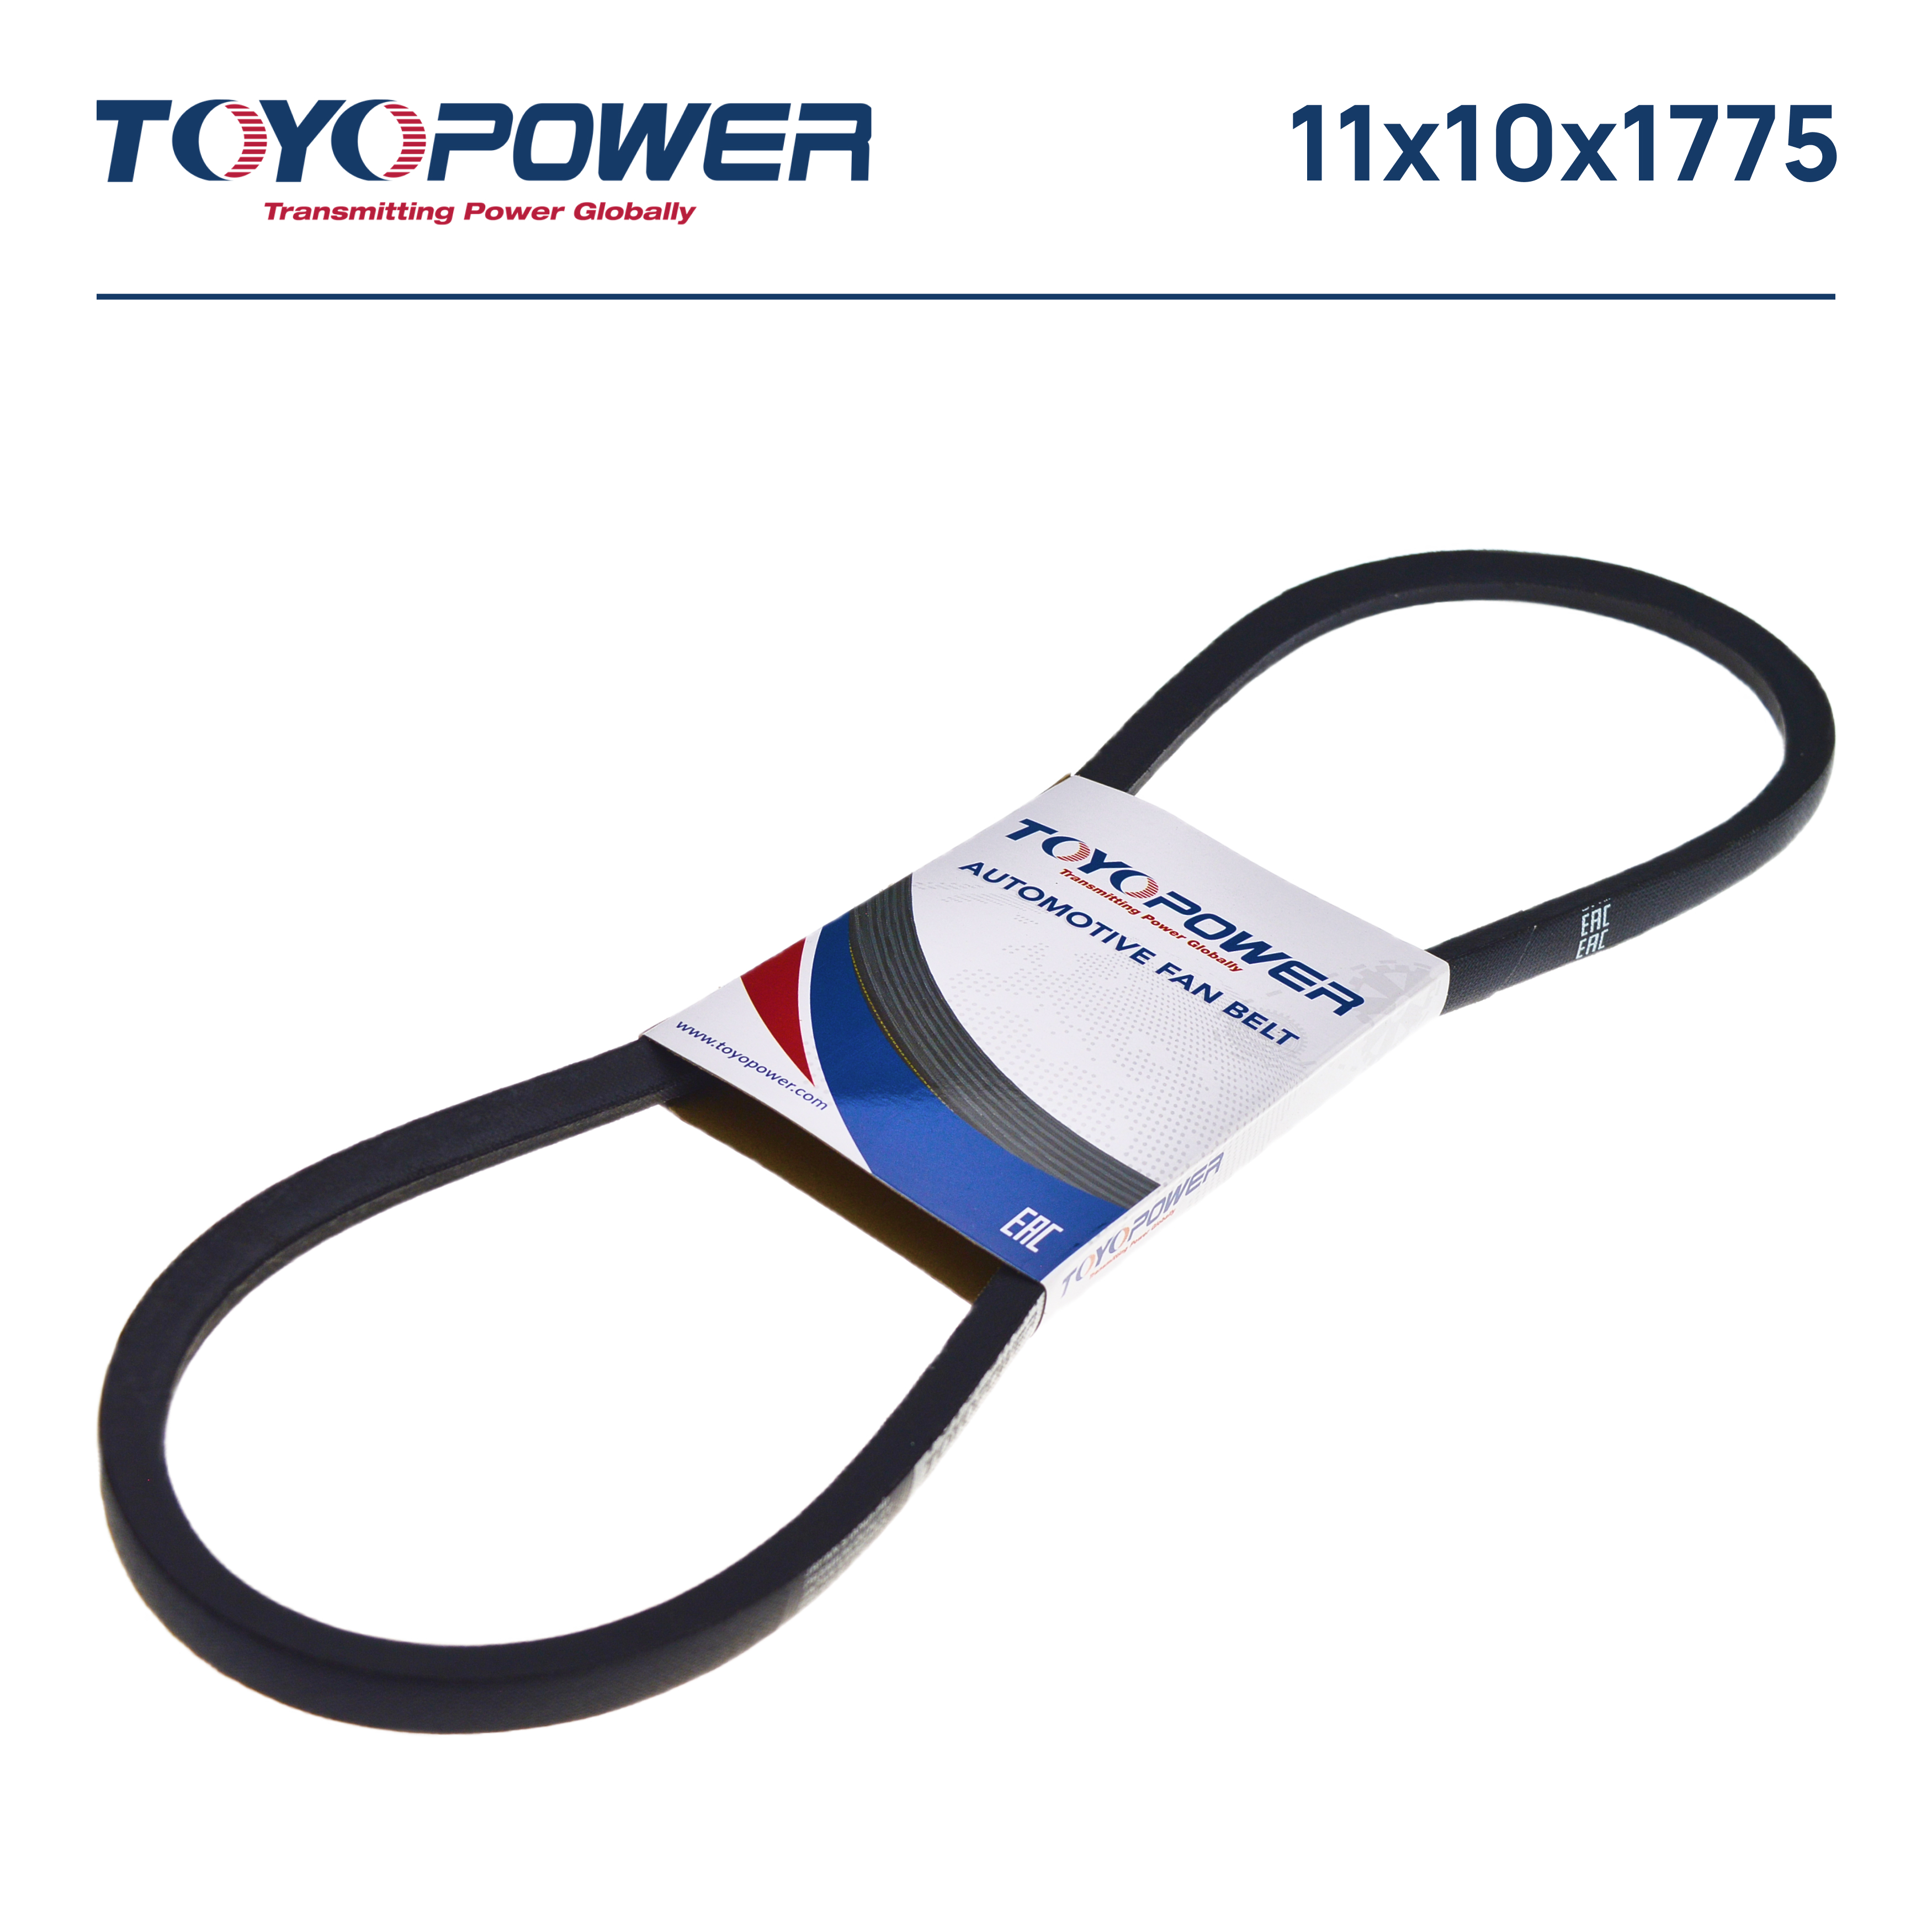 Ремень SPA (11x10) -1775 Lp - Toyopower 11X10X1775